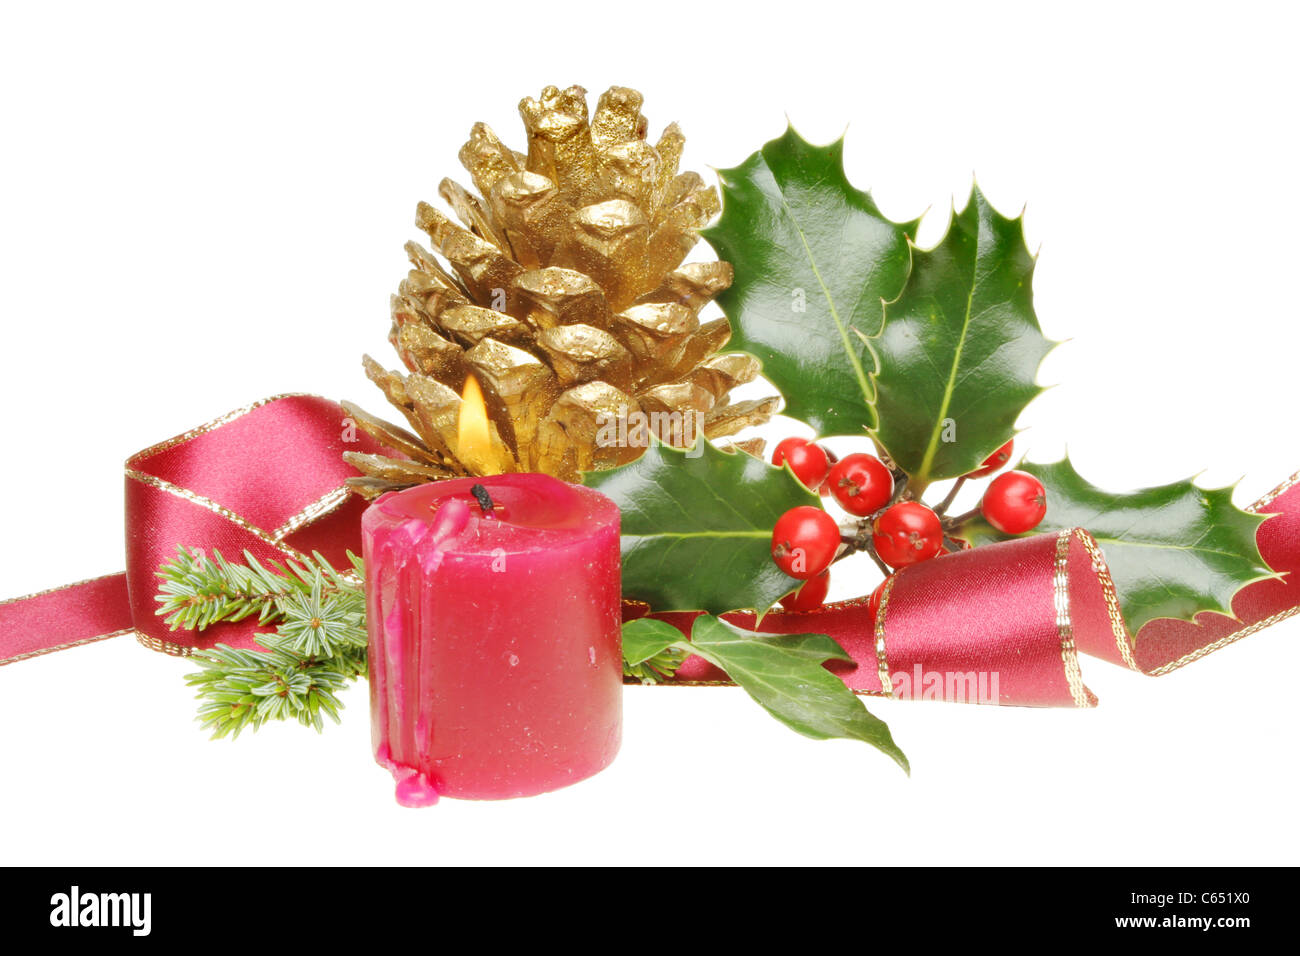 Weihnachtsdekoration der goldenen Tannenzapfen, brennende Kerze, scharfkantigen Goldband und saisonale Laub Stockfoto